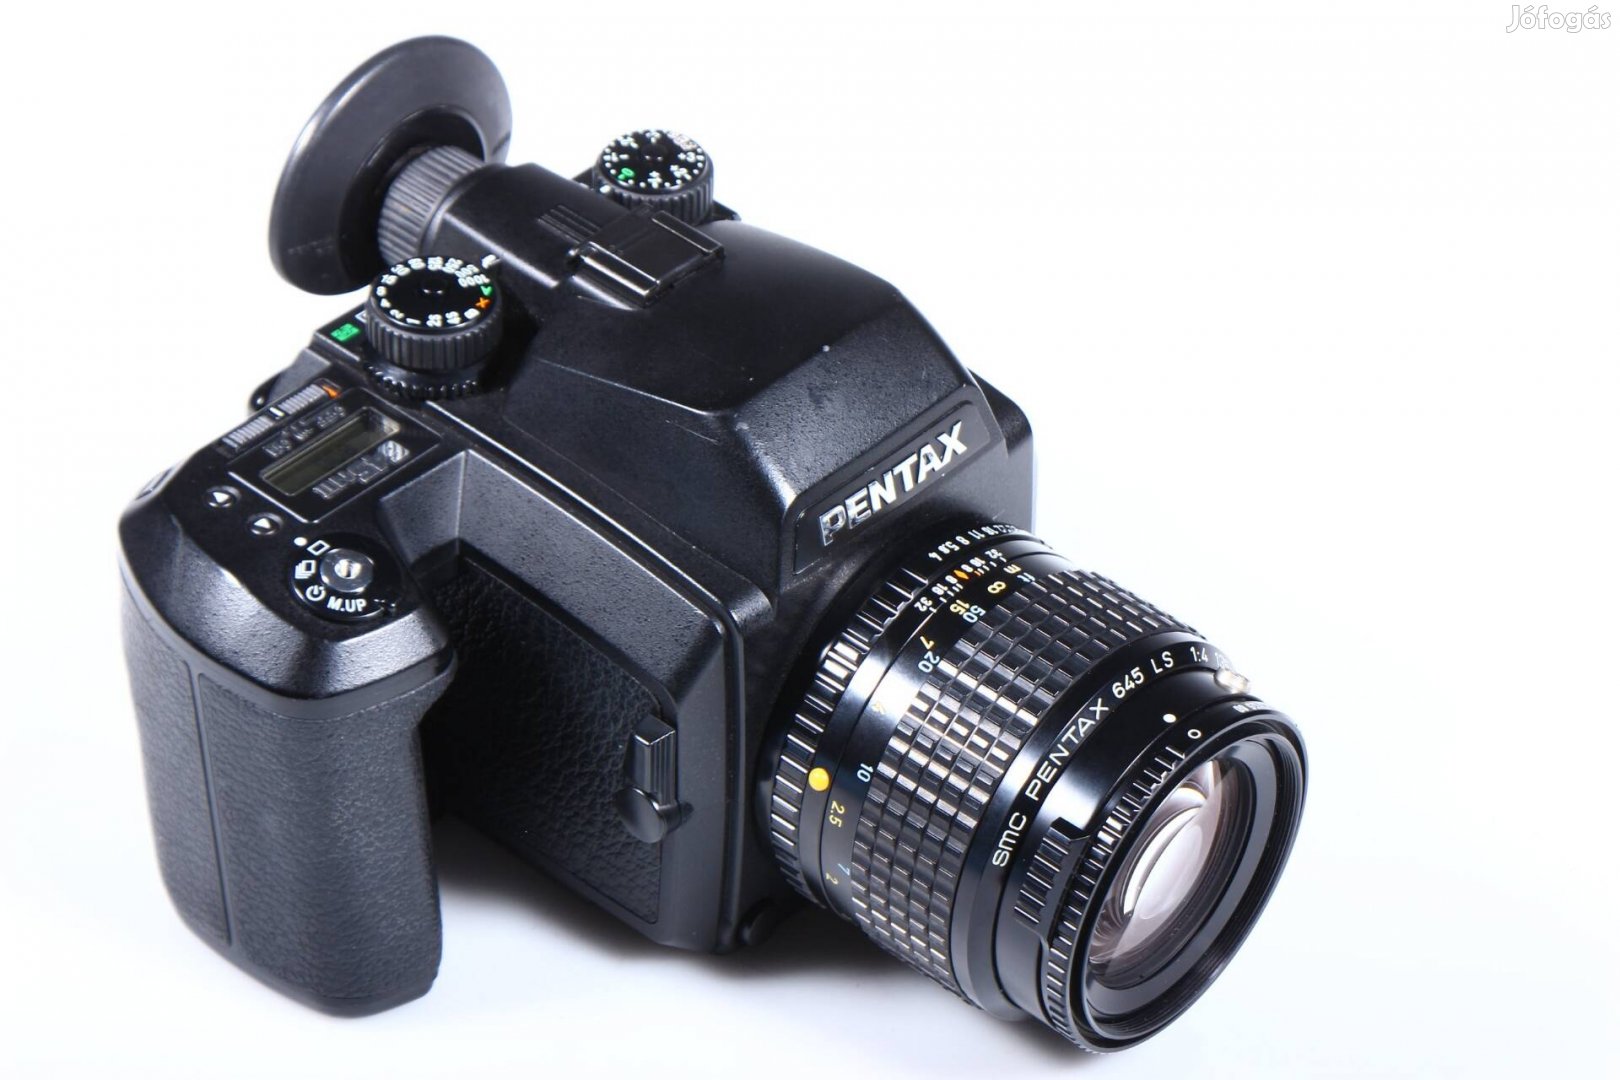 Pentax 645NII filmes fényképezőgép + f4 135mm objektív 